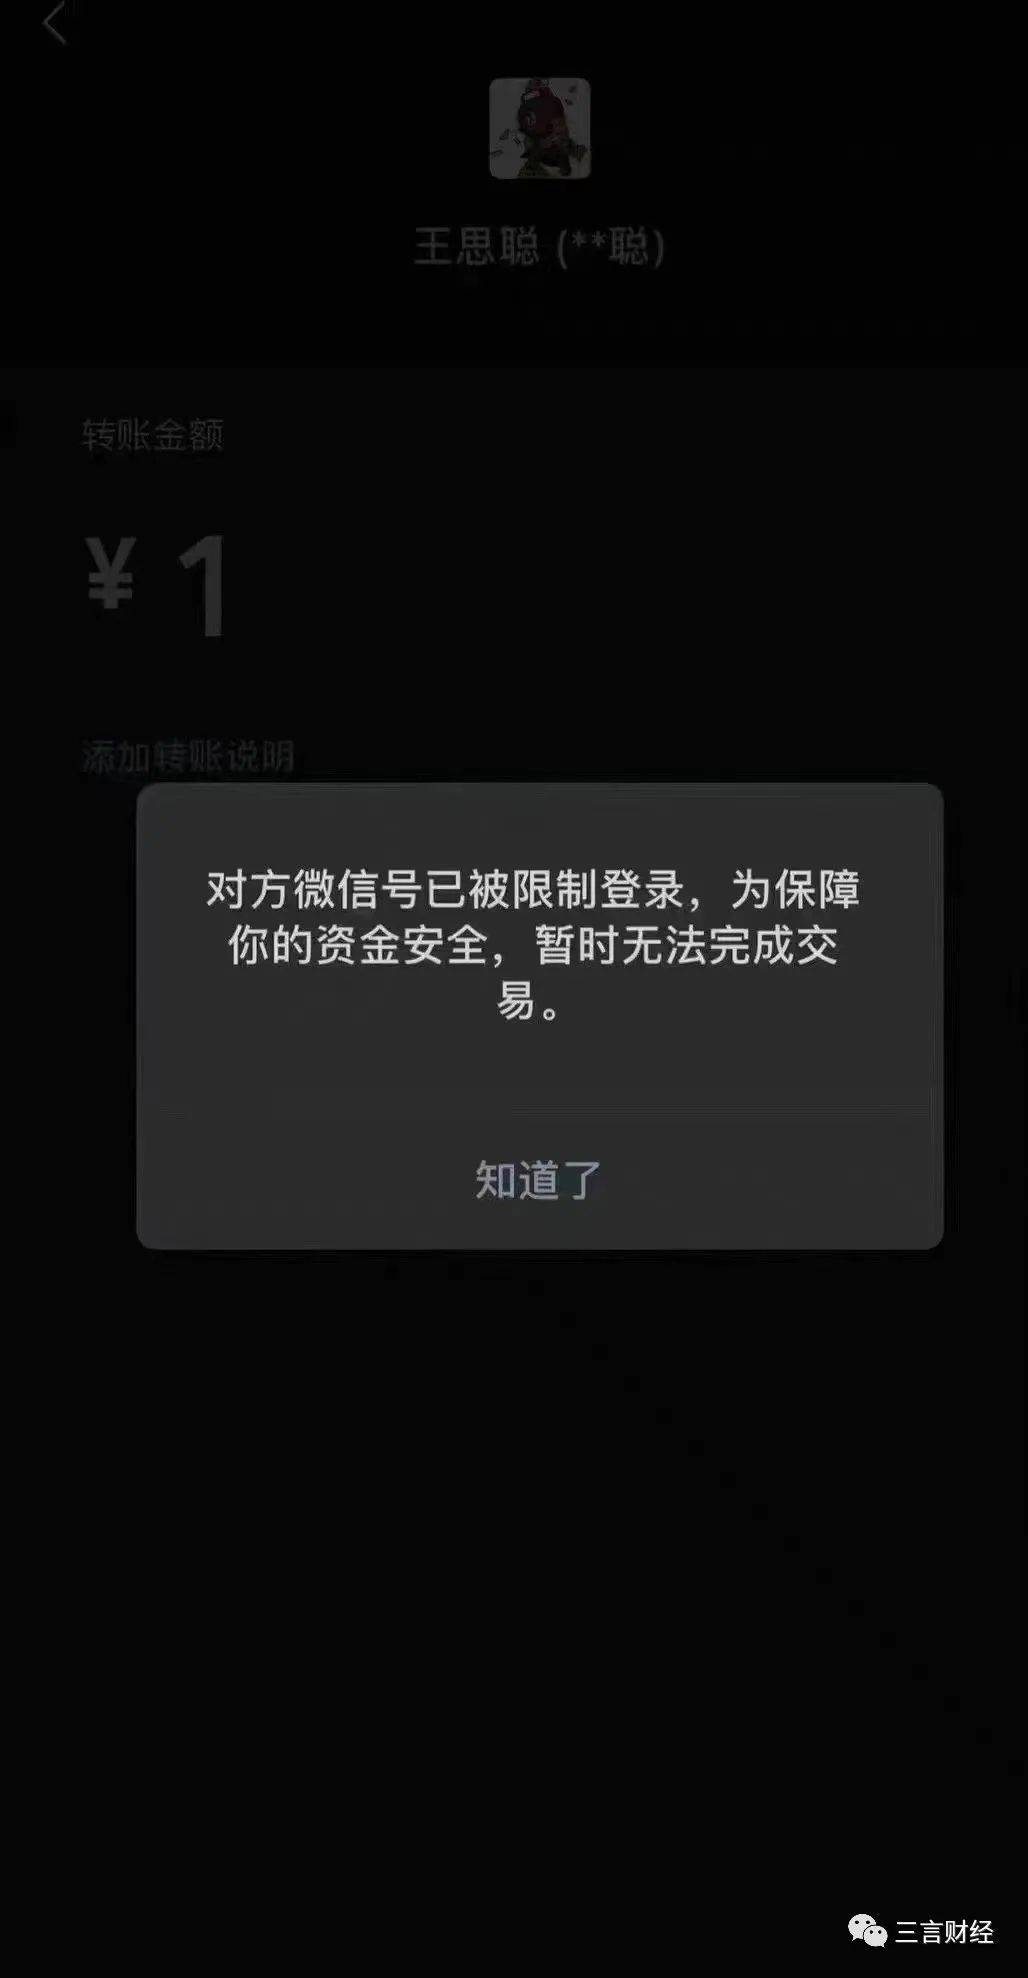 另有网传图片显示,有人向疑似王思聪微信转账,却显示对方账号已被限制